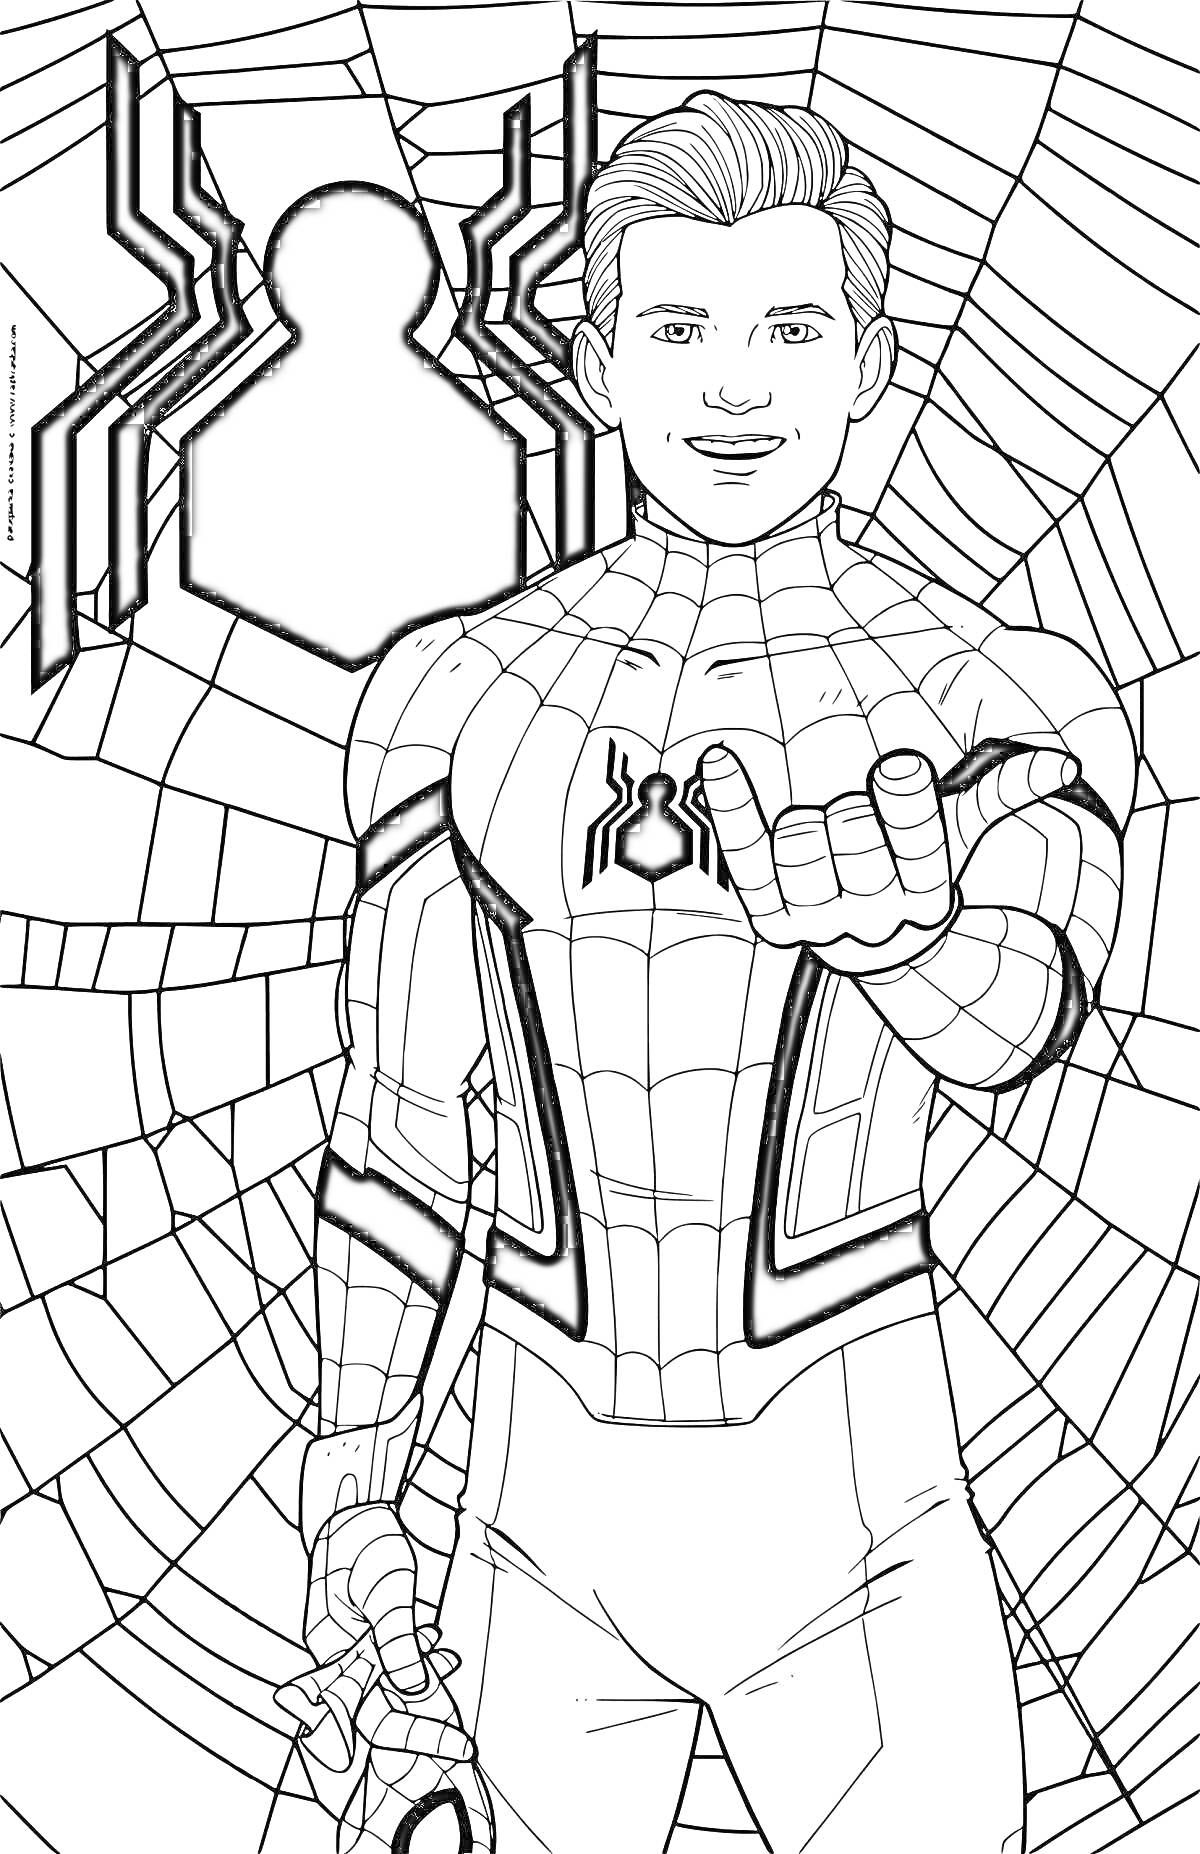 Раскраска Питер Паркер в костюме Человека-паука (Spider-Man) на фоне паутины, протягивает руку вперед